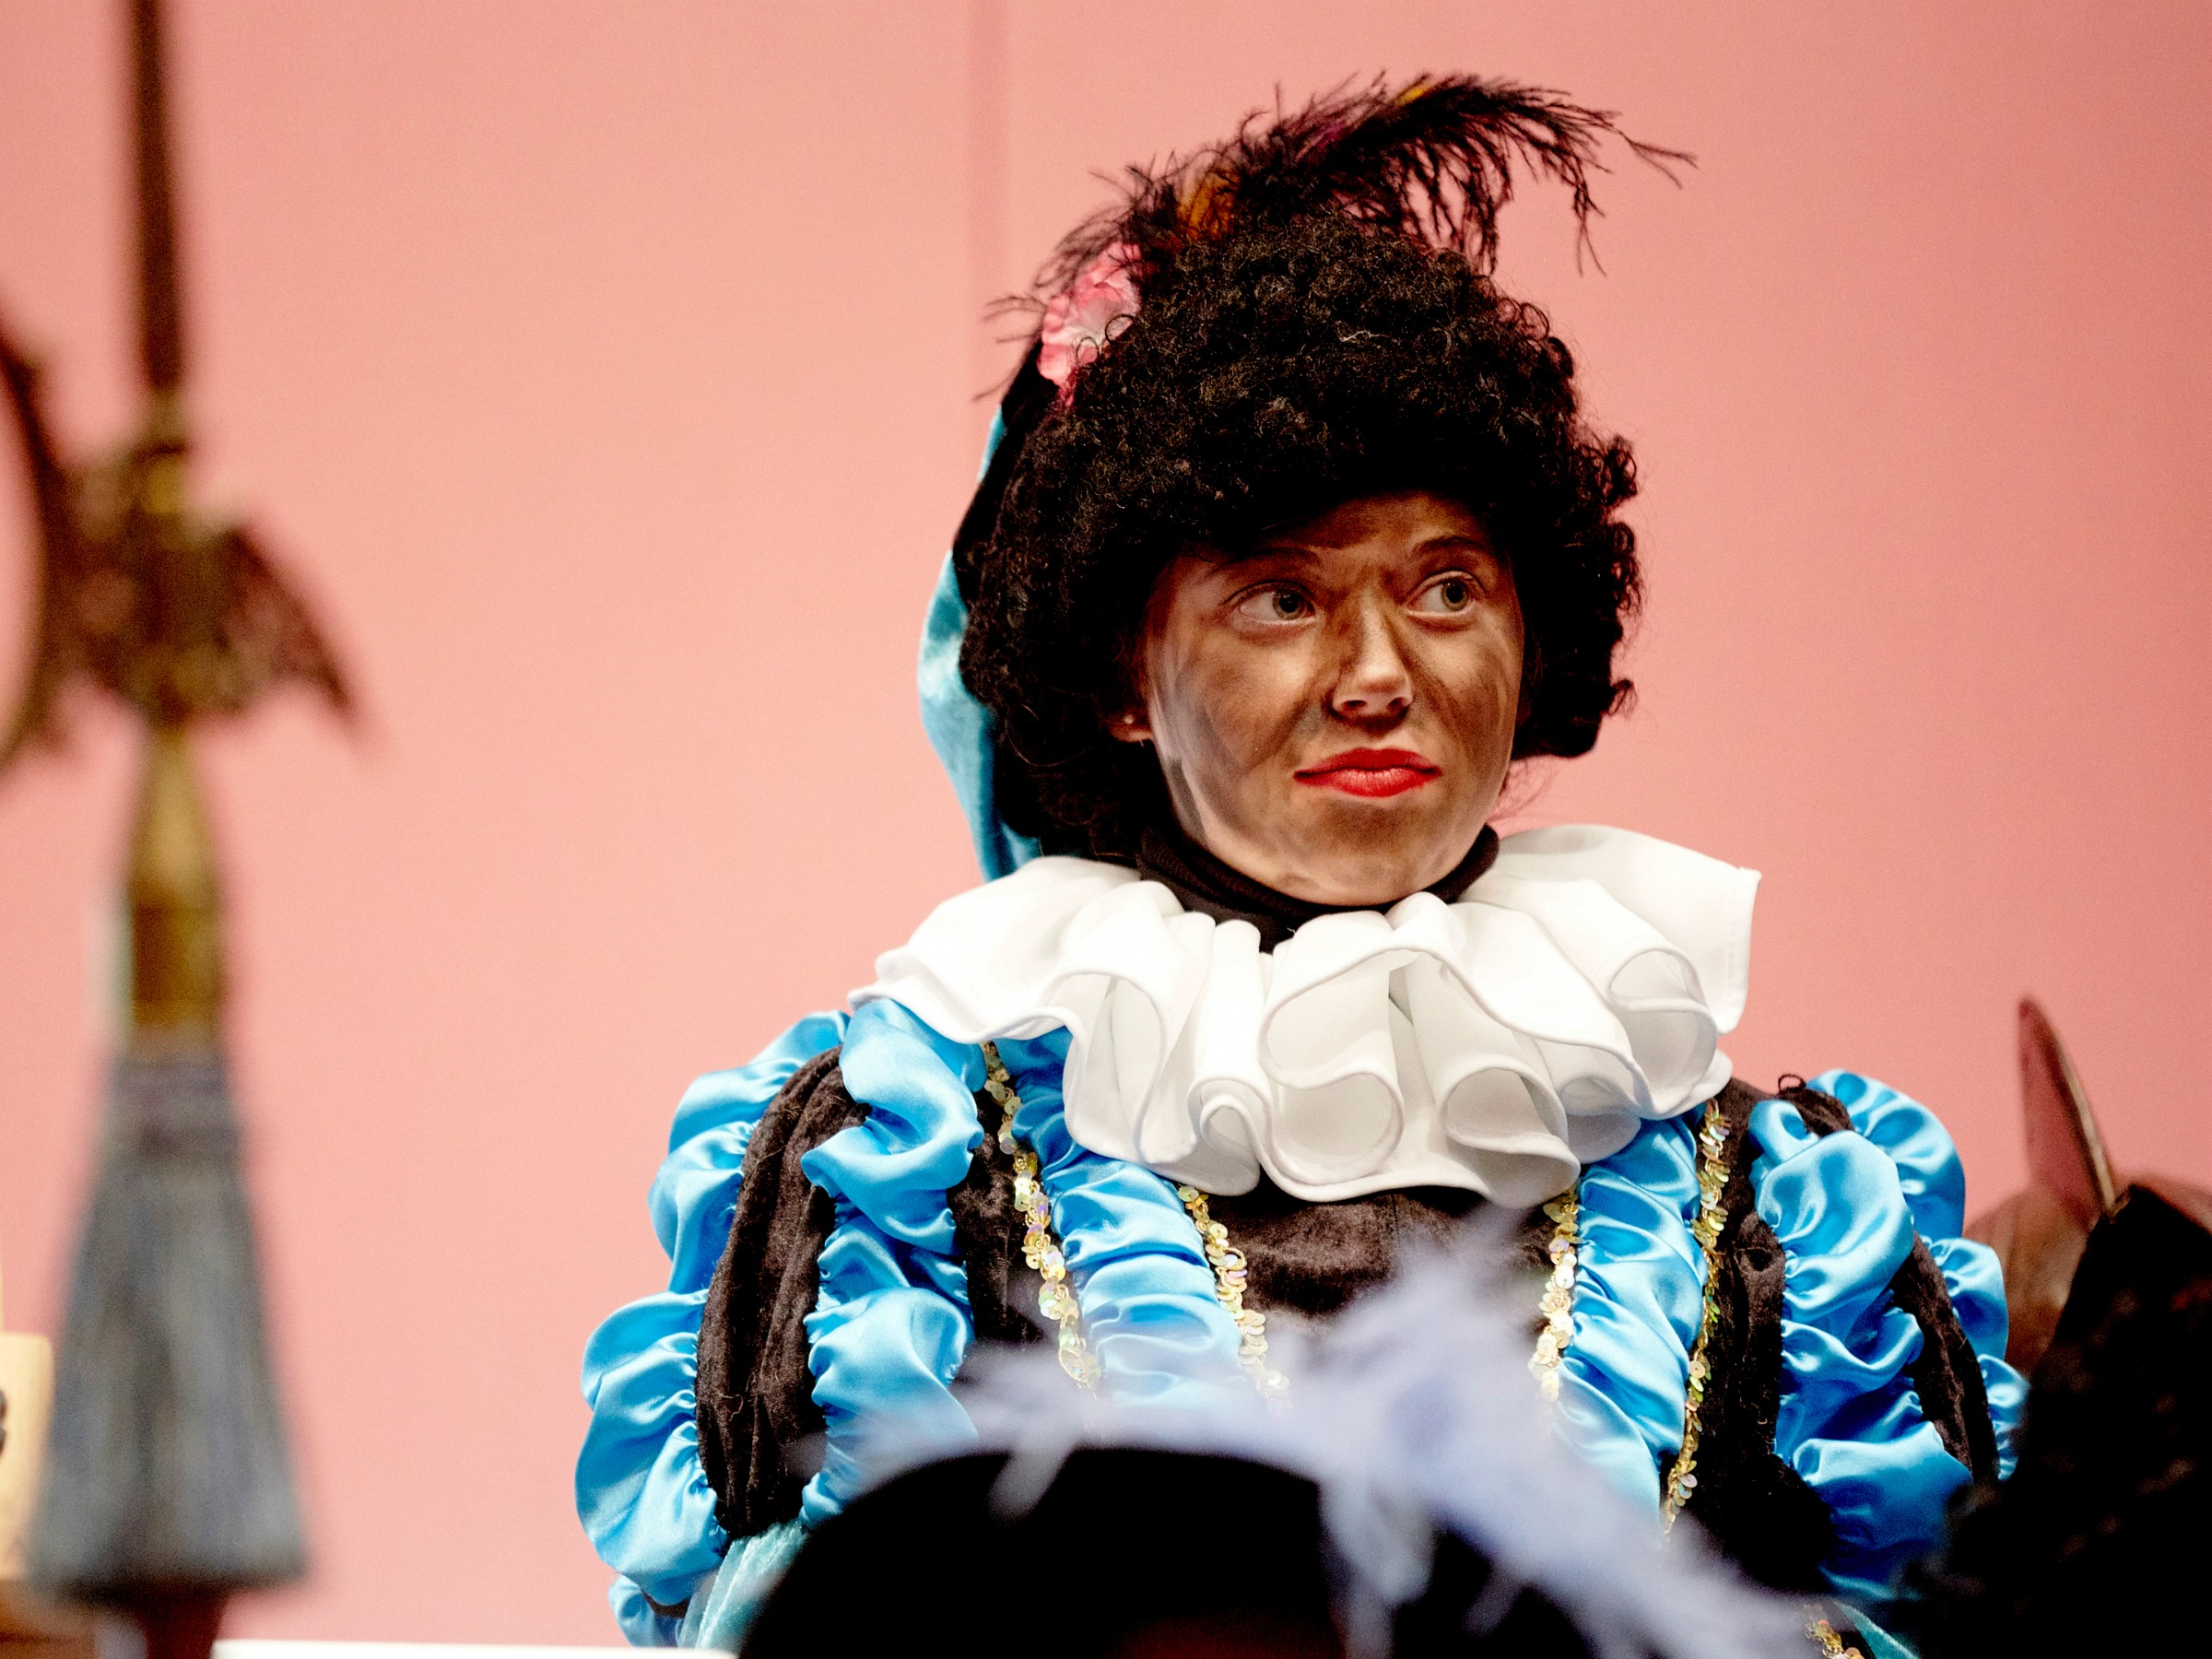 RTL neemt afscheid van Zwarte Piet en zet onder druk